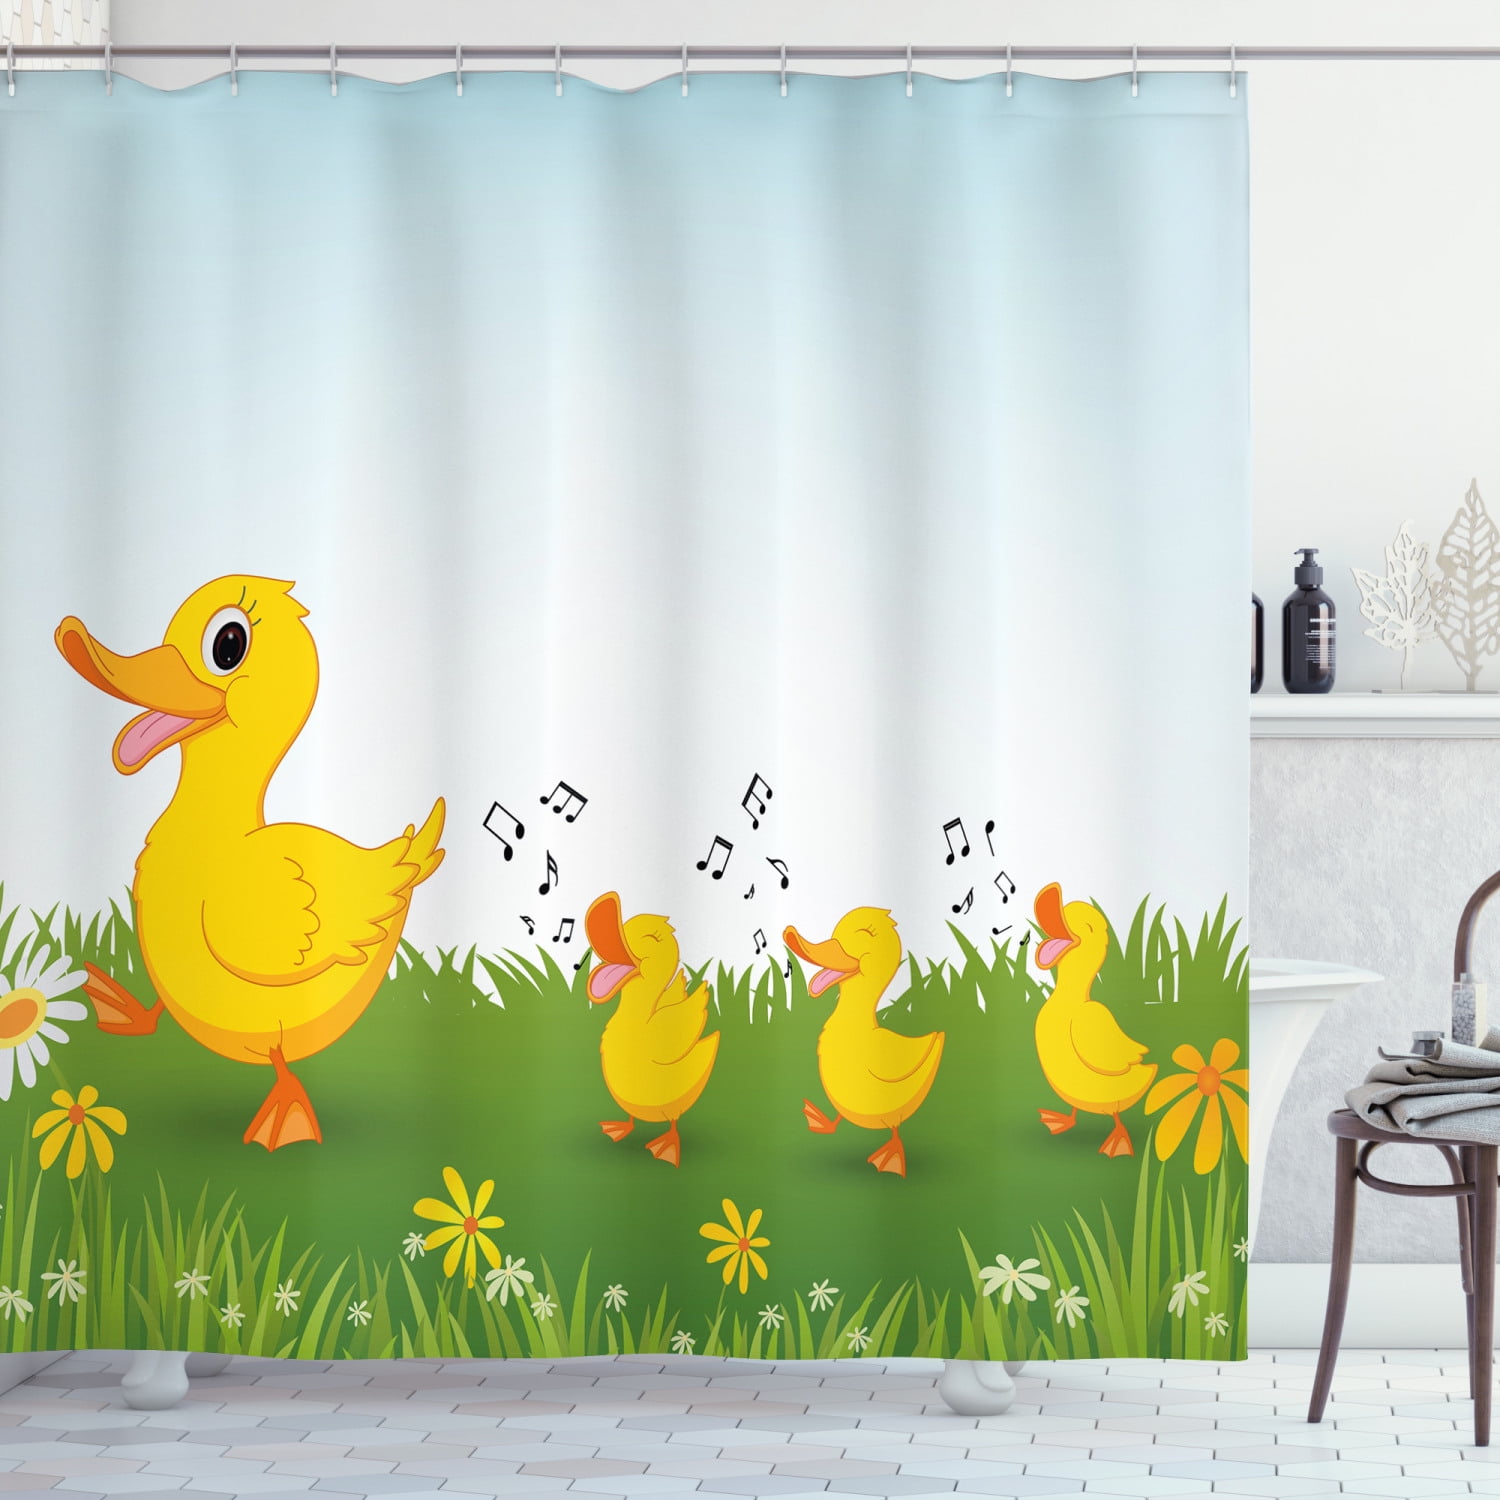 Ducks Unlimited Fabric Shower Curtain Plaid 72" x 72" Geese Duckhead Logo Bath